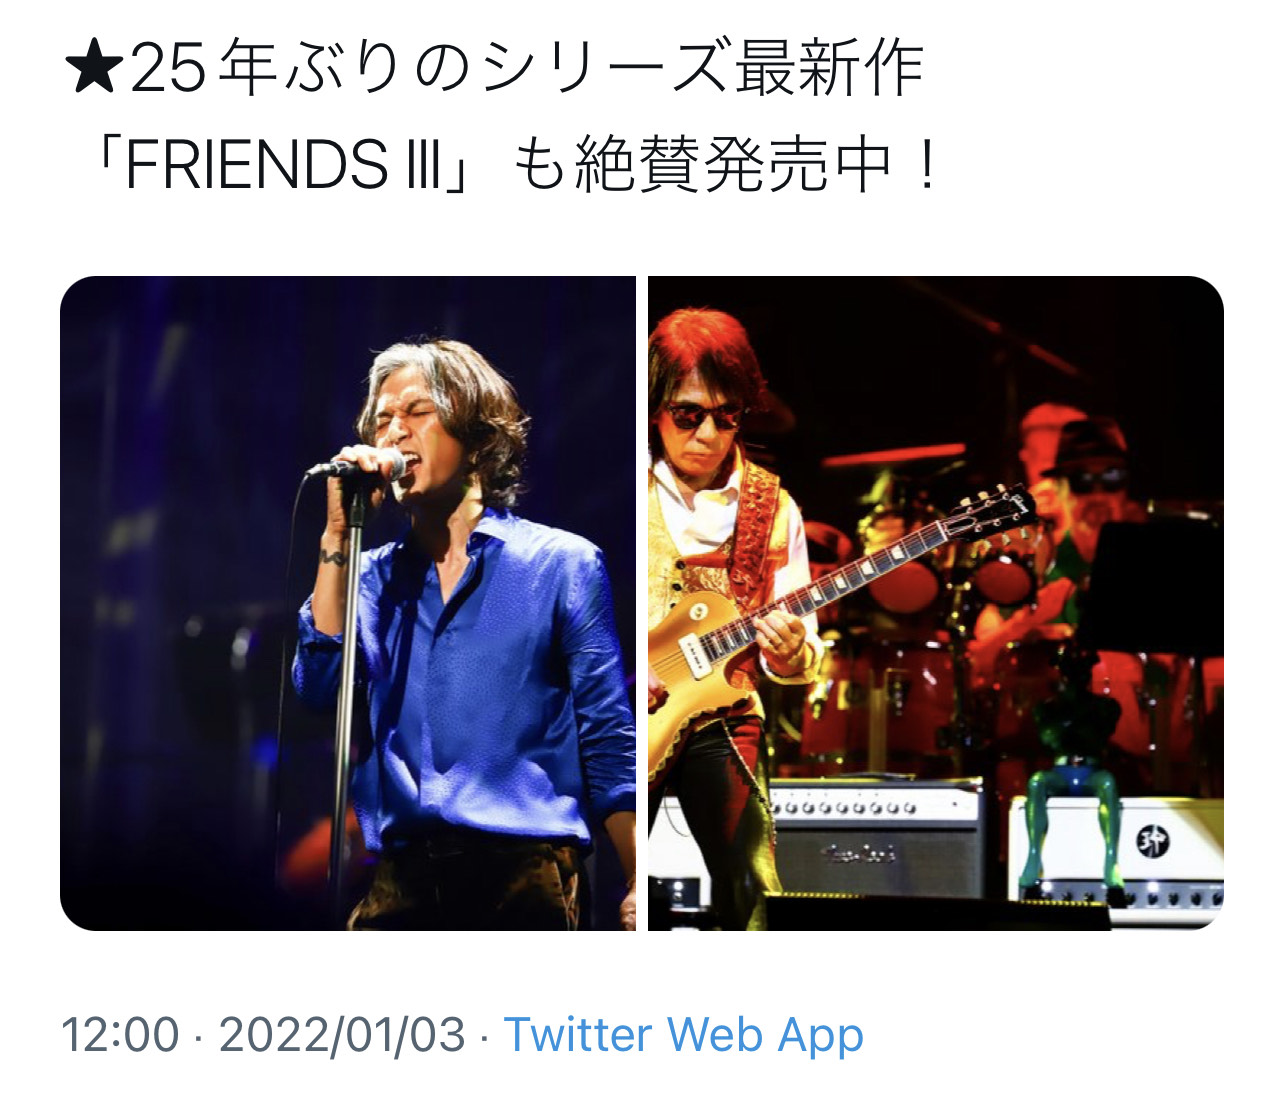 B'z公式Twitterで2022年1月3日に投稿された『LIVE FRIENDS』のステージ写真